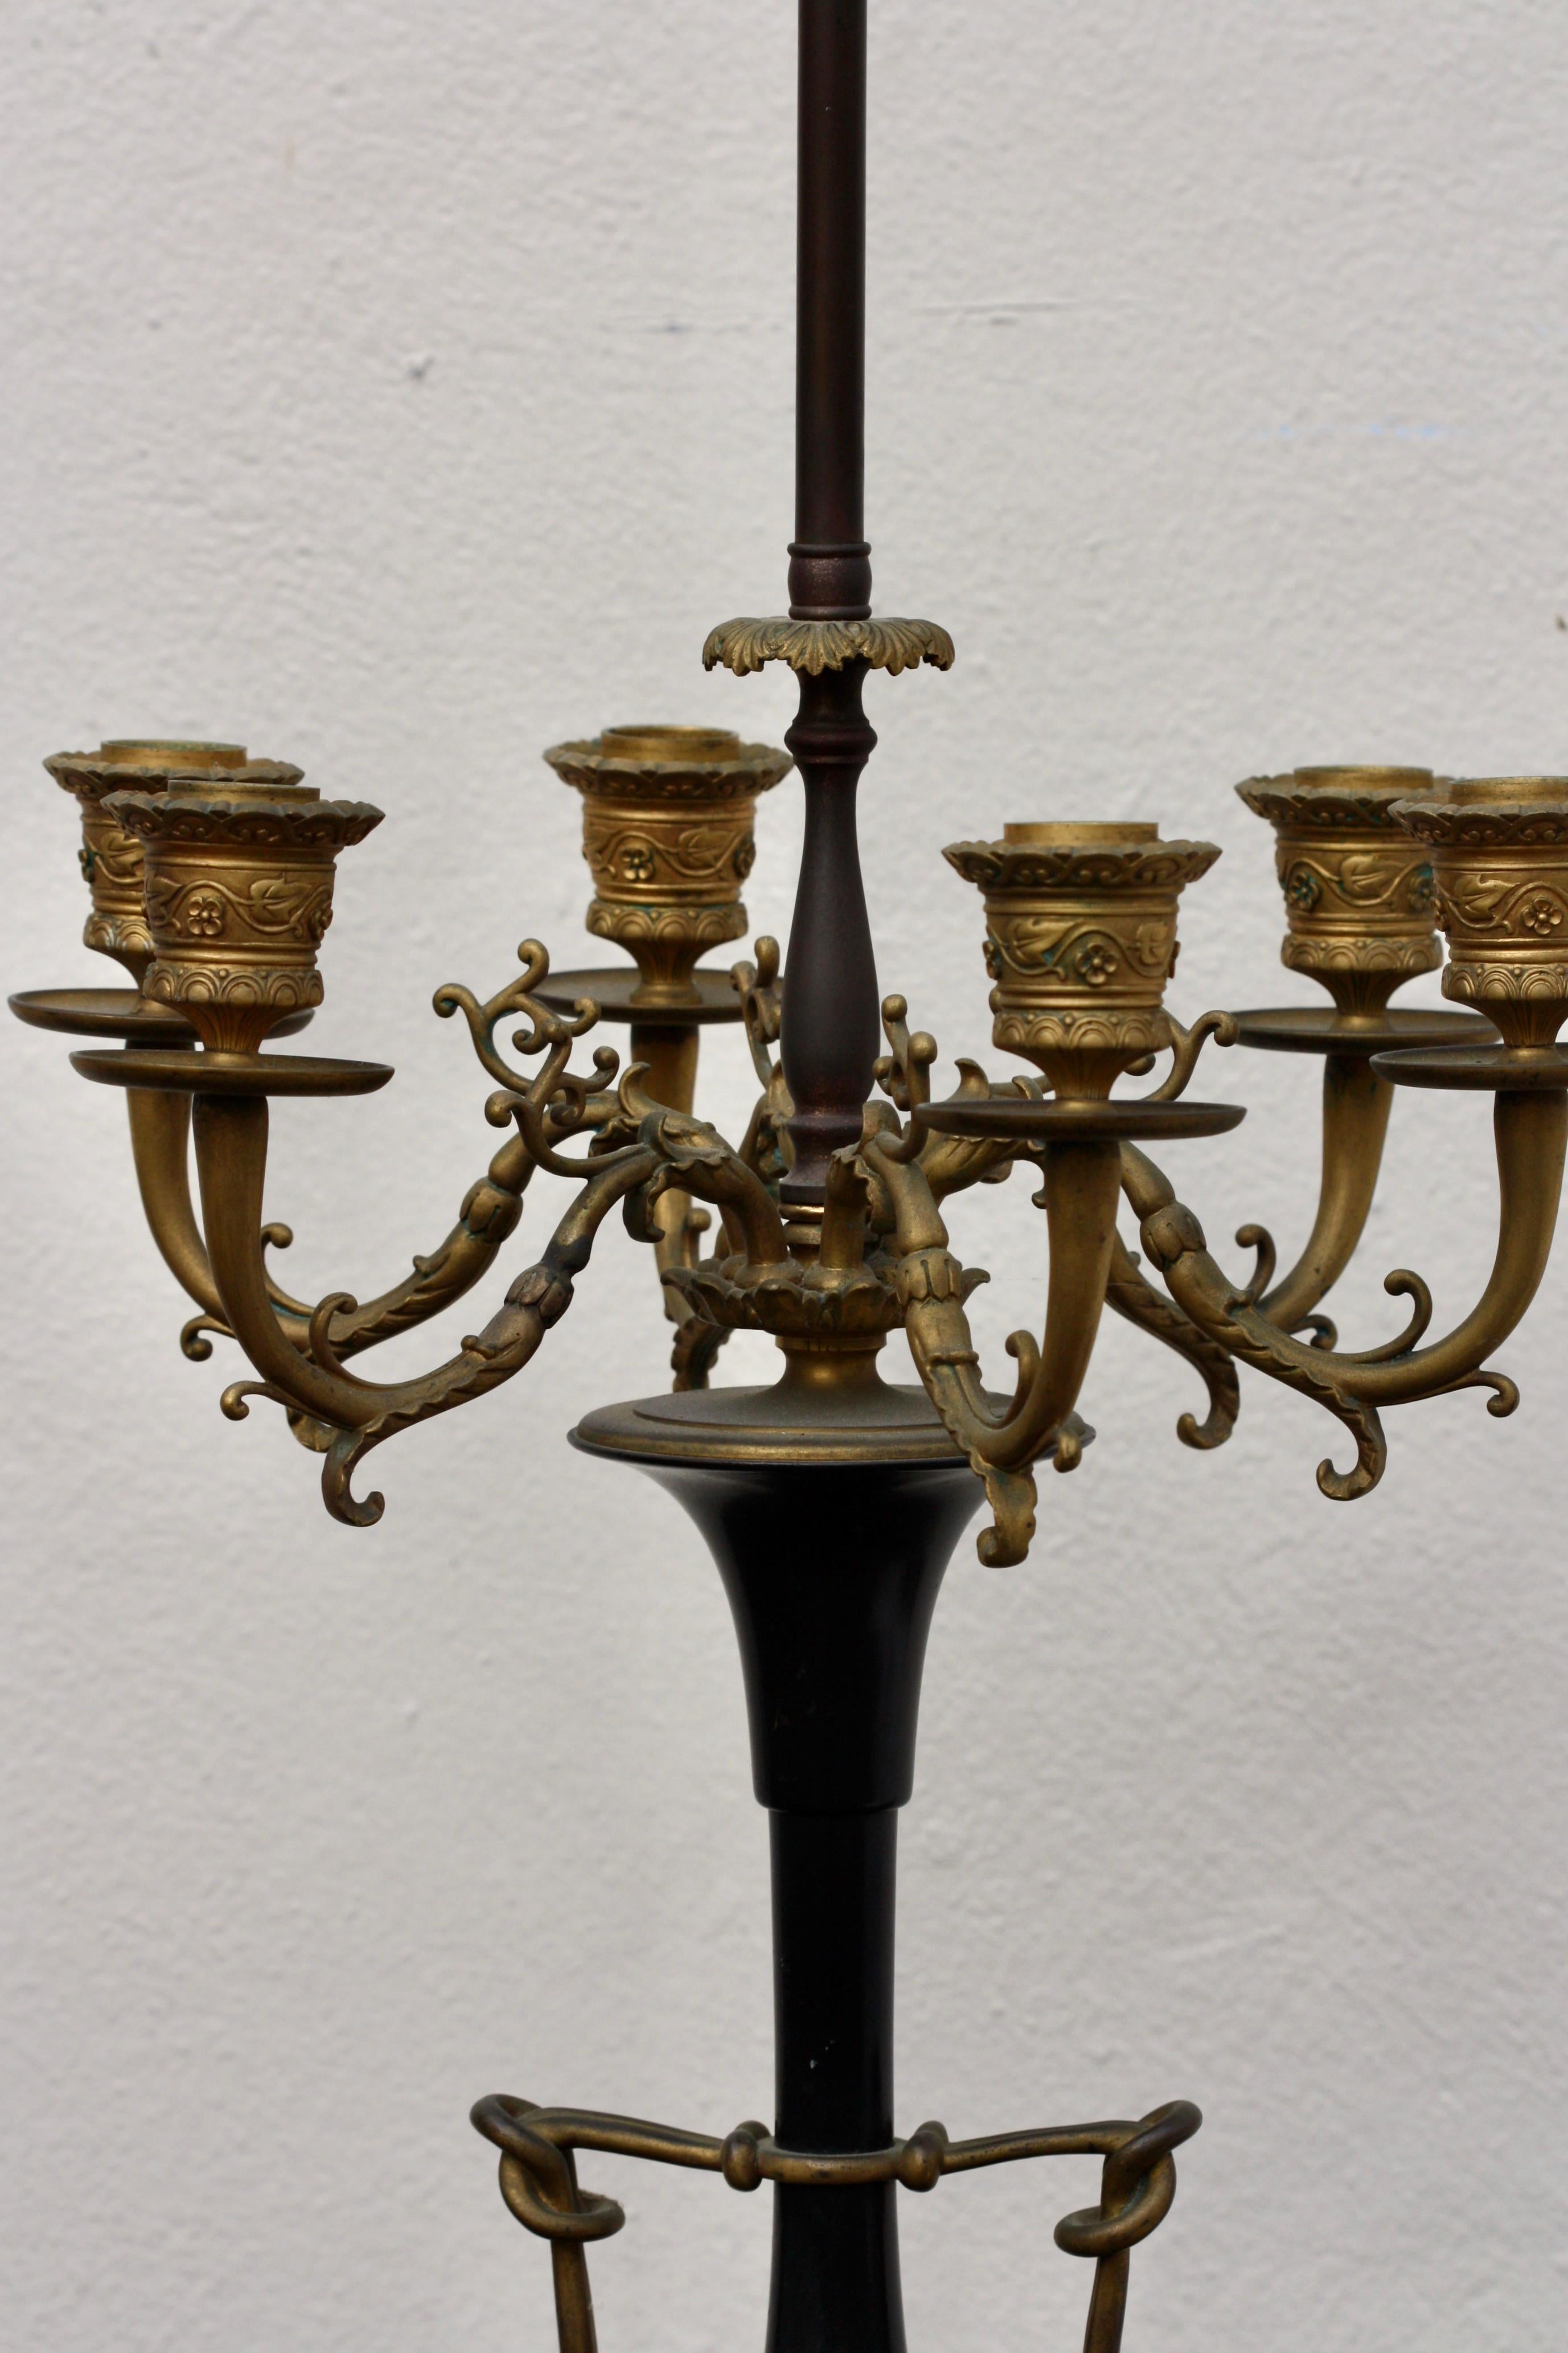 Ferdinand Barbedienne
1810-1892
Chandelier à six lumières en bronze doré et patiné de style néo-rec, équipé pour l'électricité, France, dernier quart du XIXe siècle, d'après un dessin de Ferdinand Barbedienne, amphore portant l'inscription F.